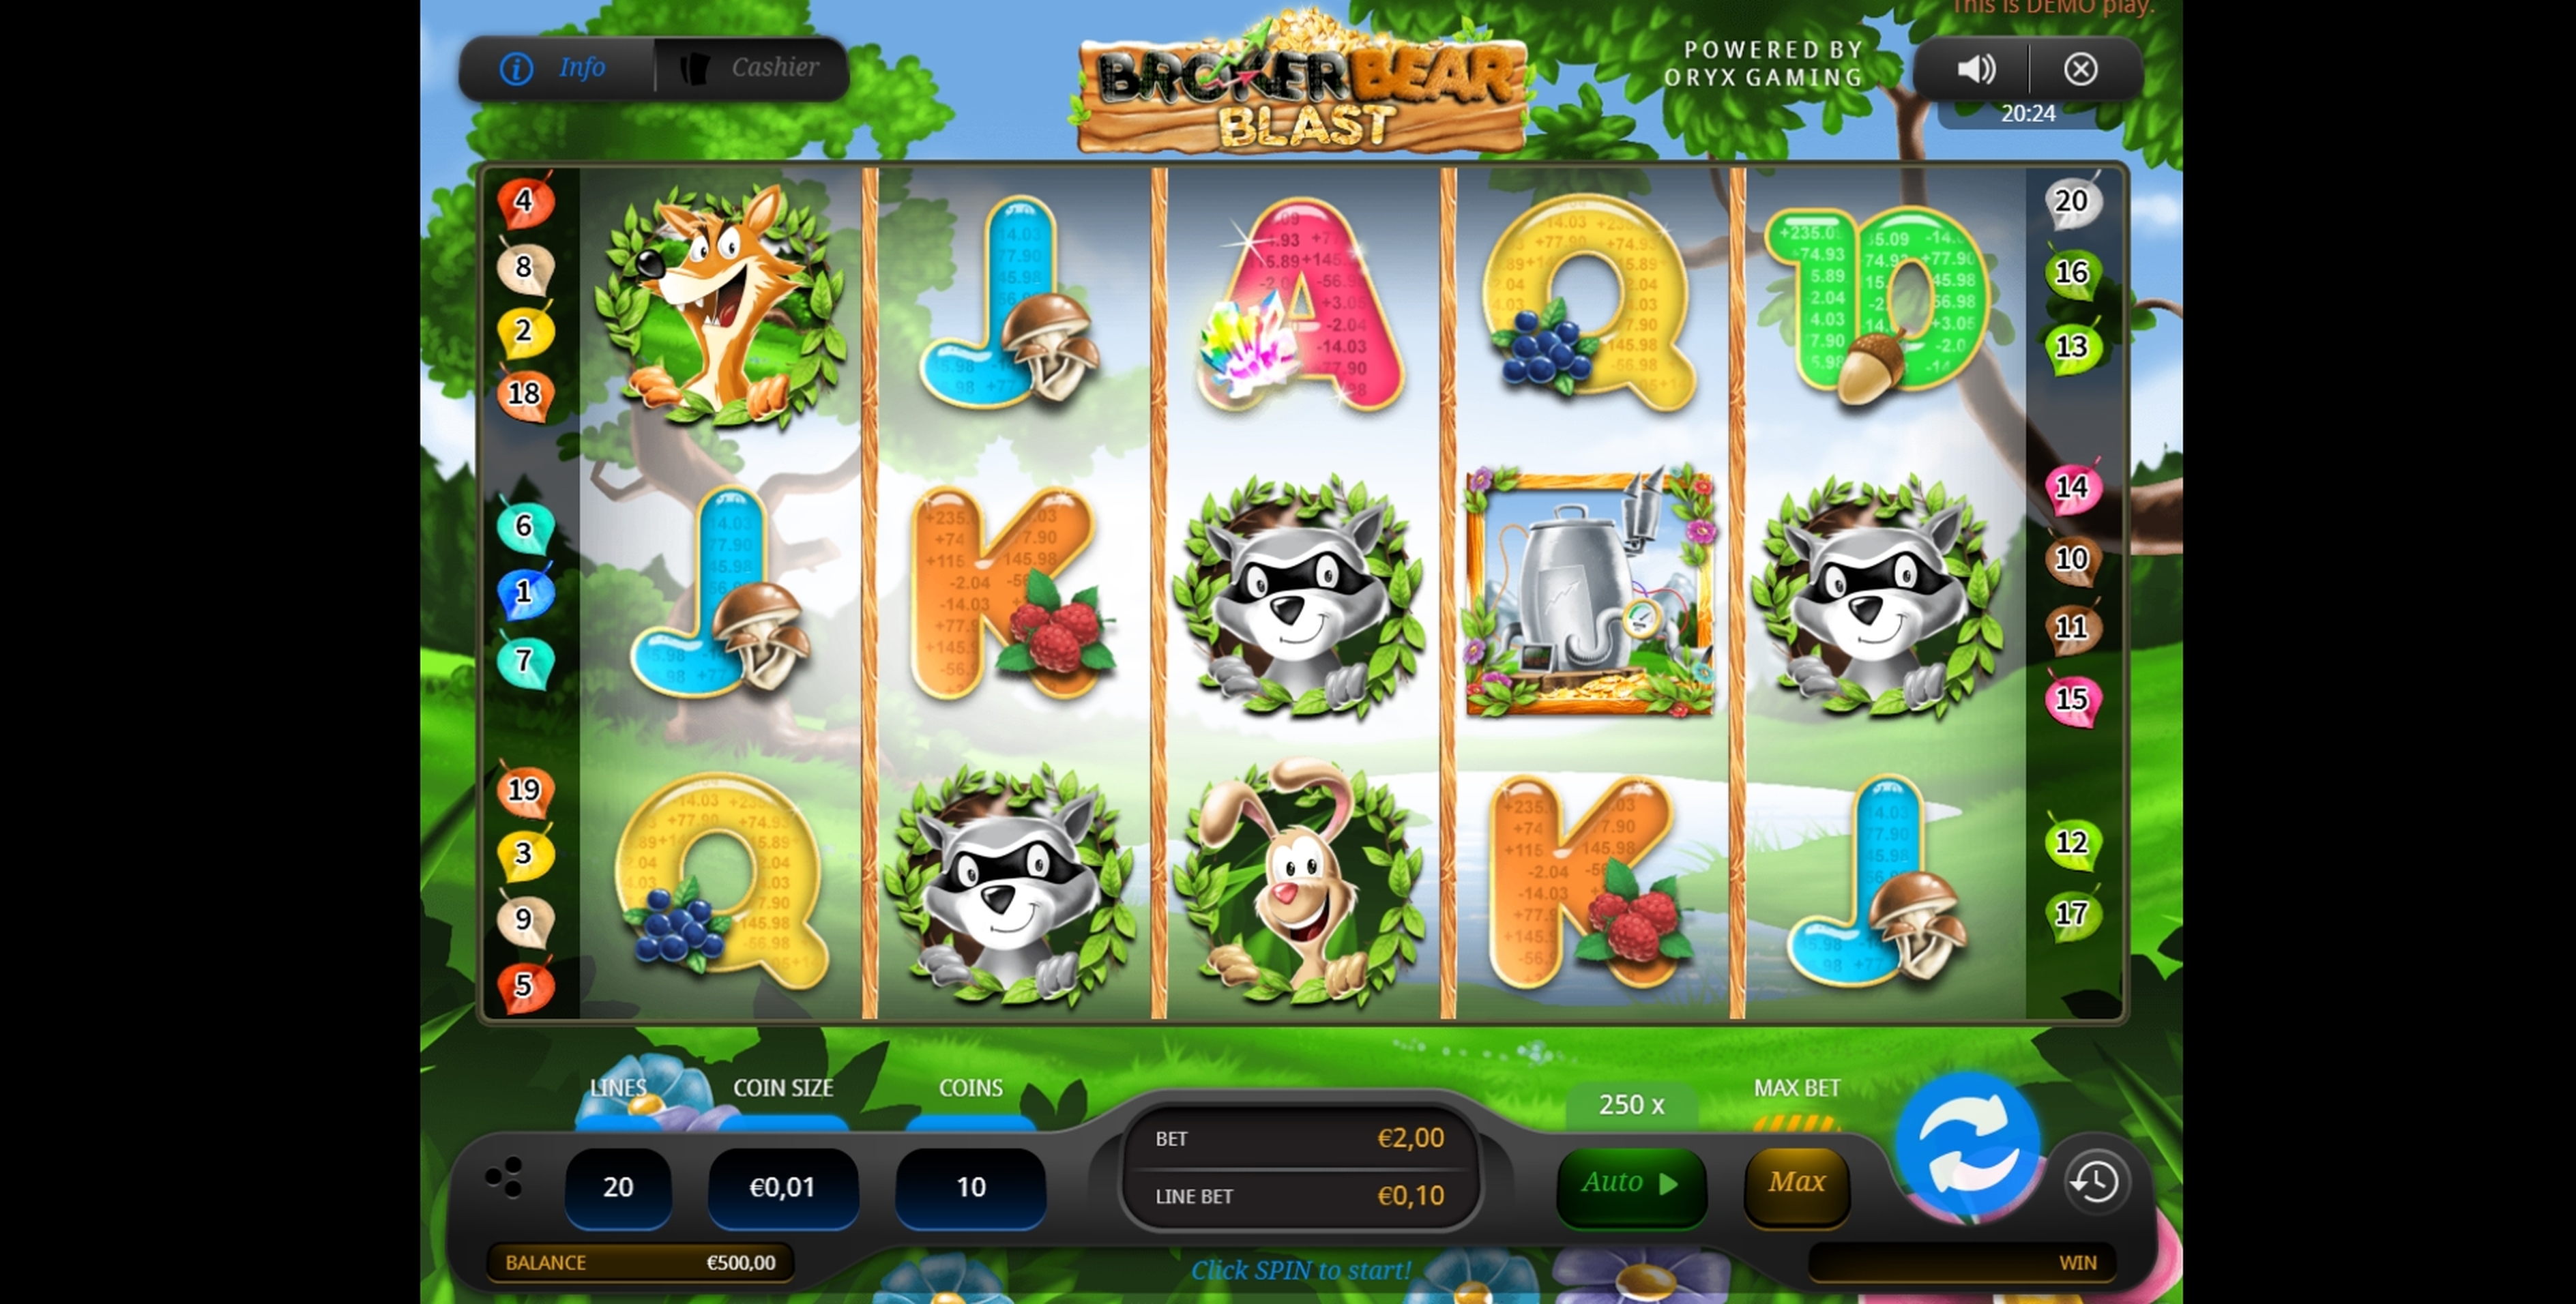 Reels in Broker Bear Blast Slot Game by Oryx Gaming